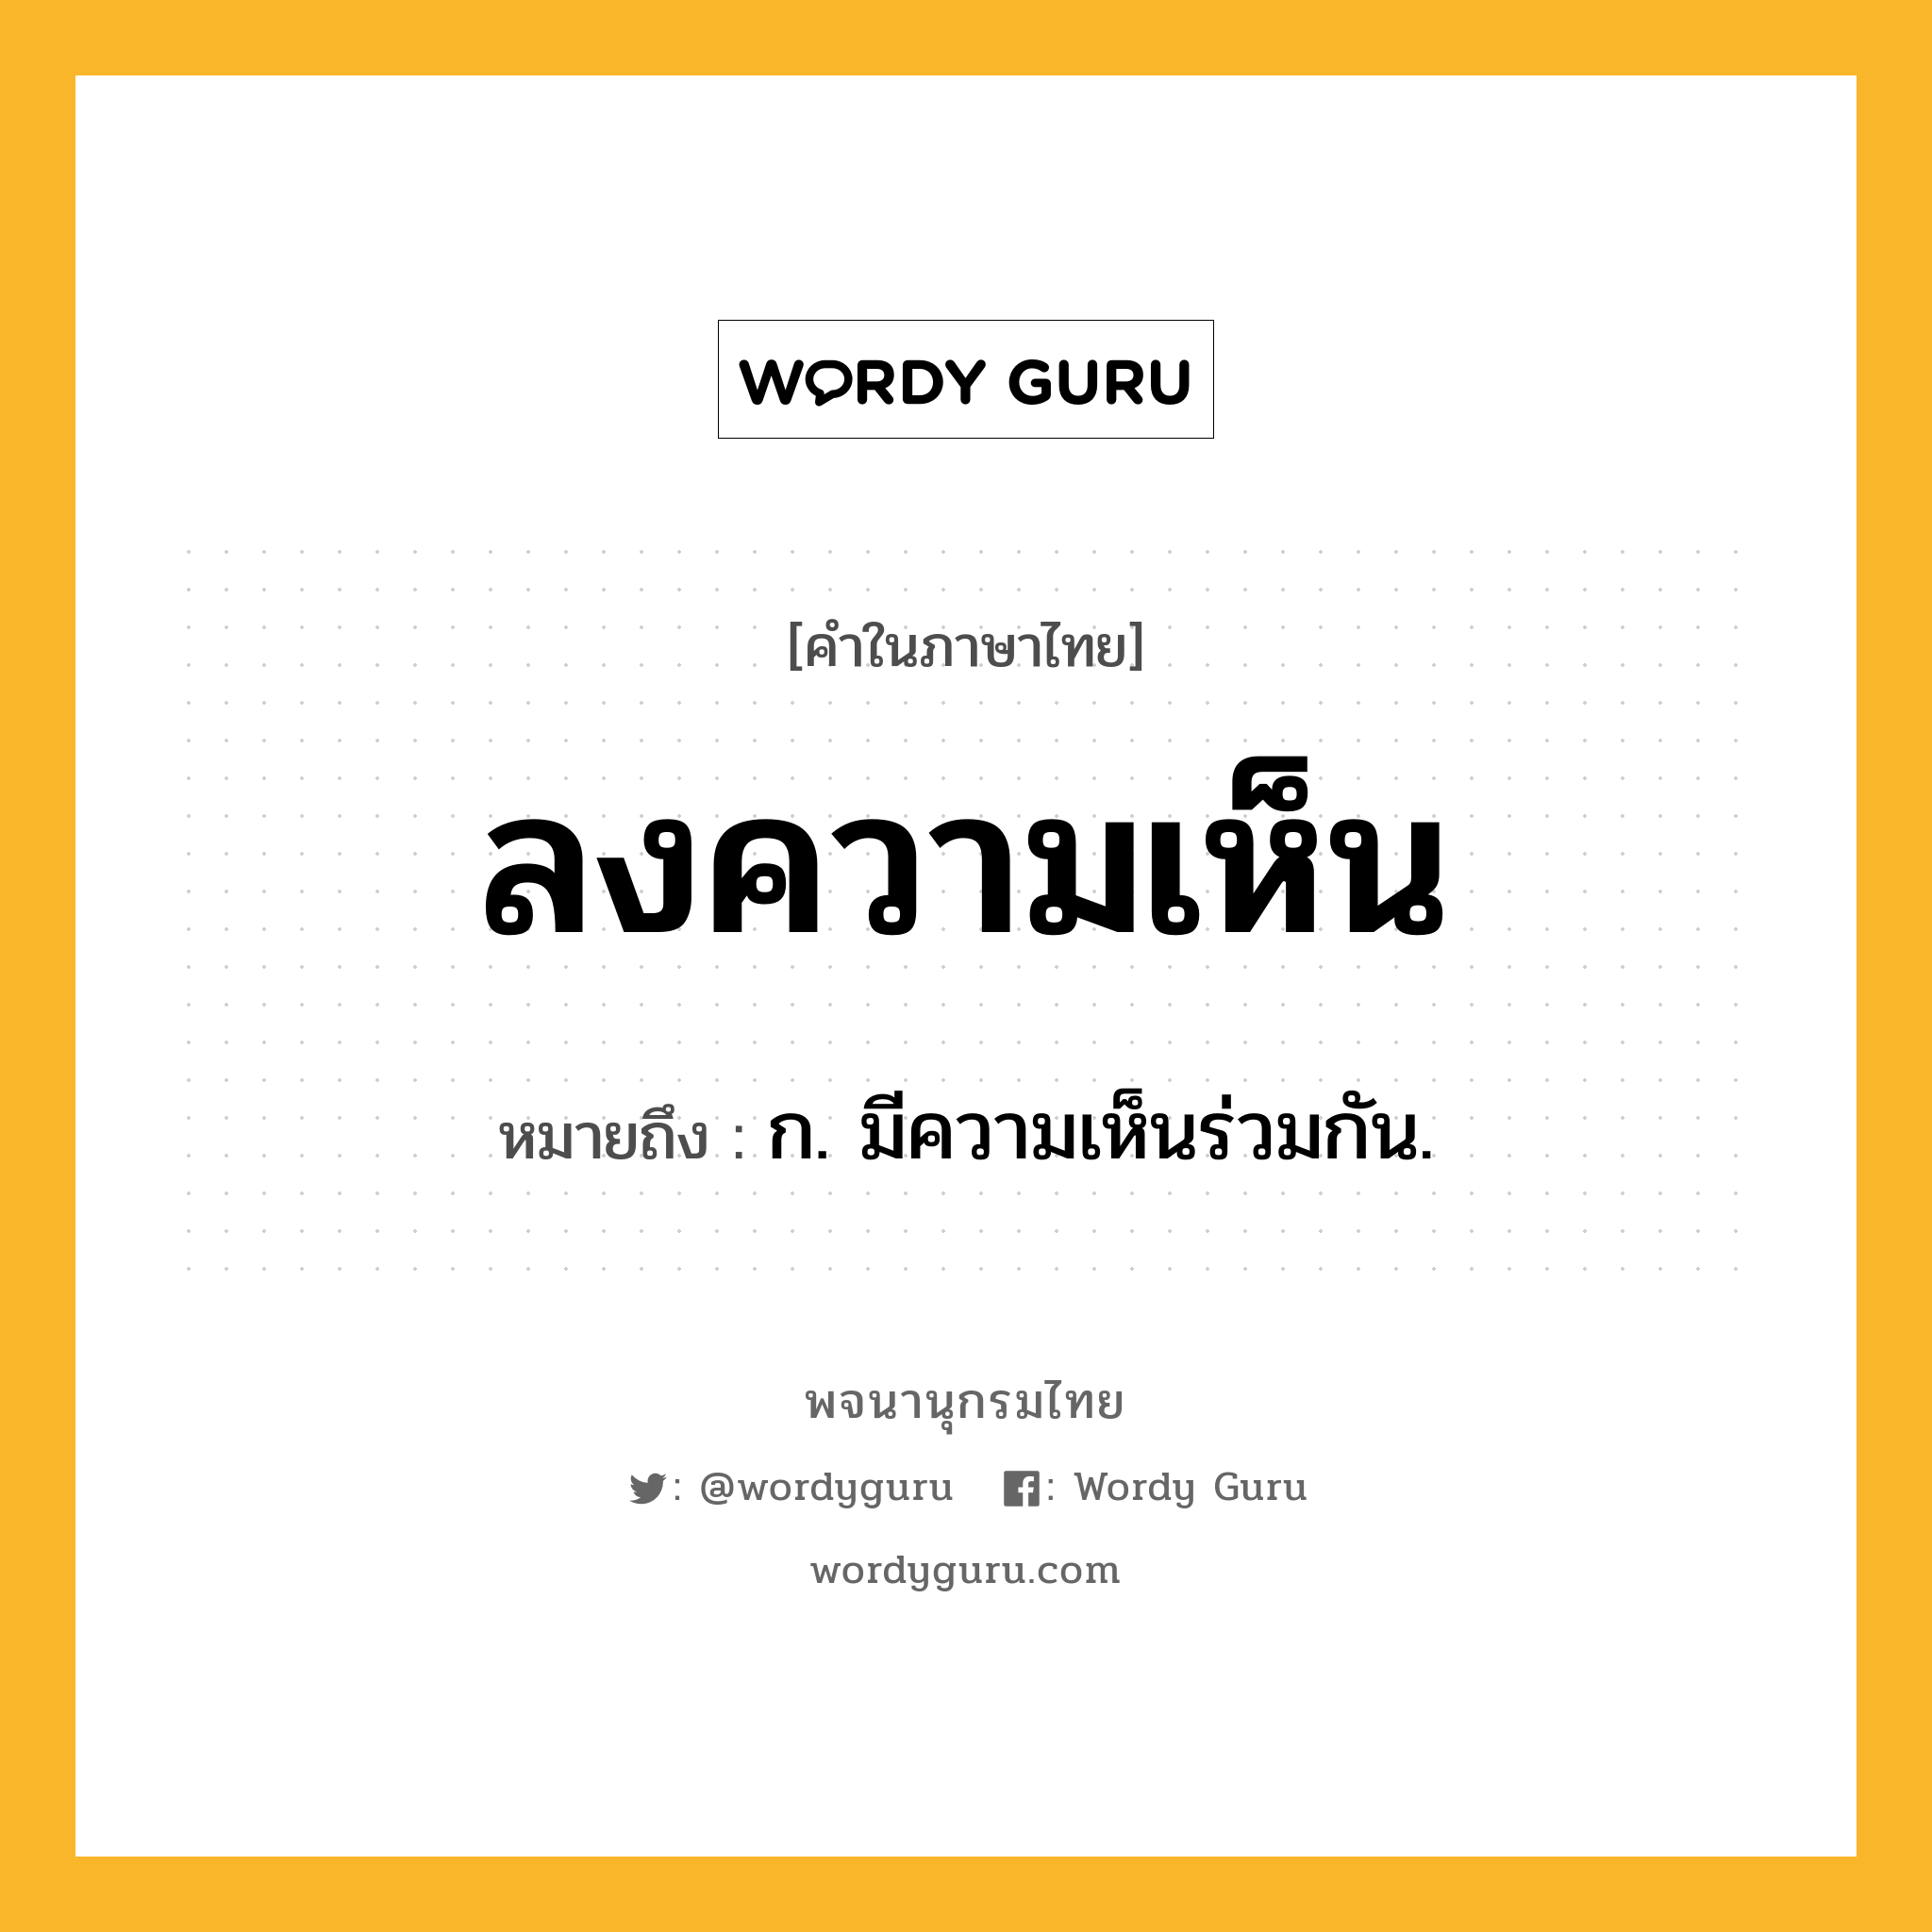 ลงความเห็น ความหมาย หมายถึงอะไร?, คำในภาษาไทย ลงความเห็น หมายถึง ก. มีความเห็นร่วมกัน.